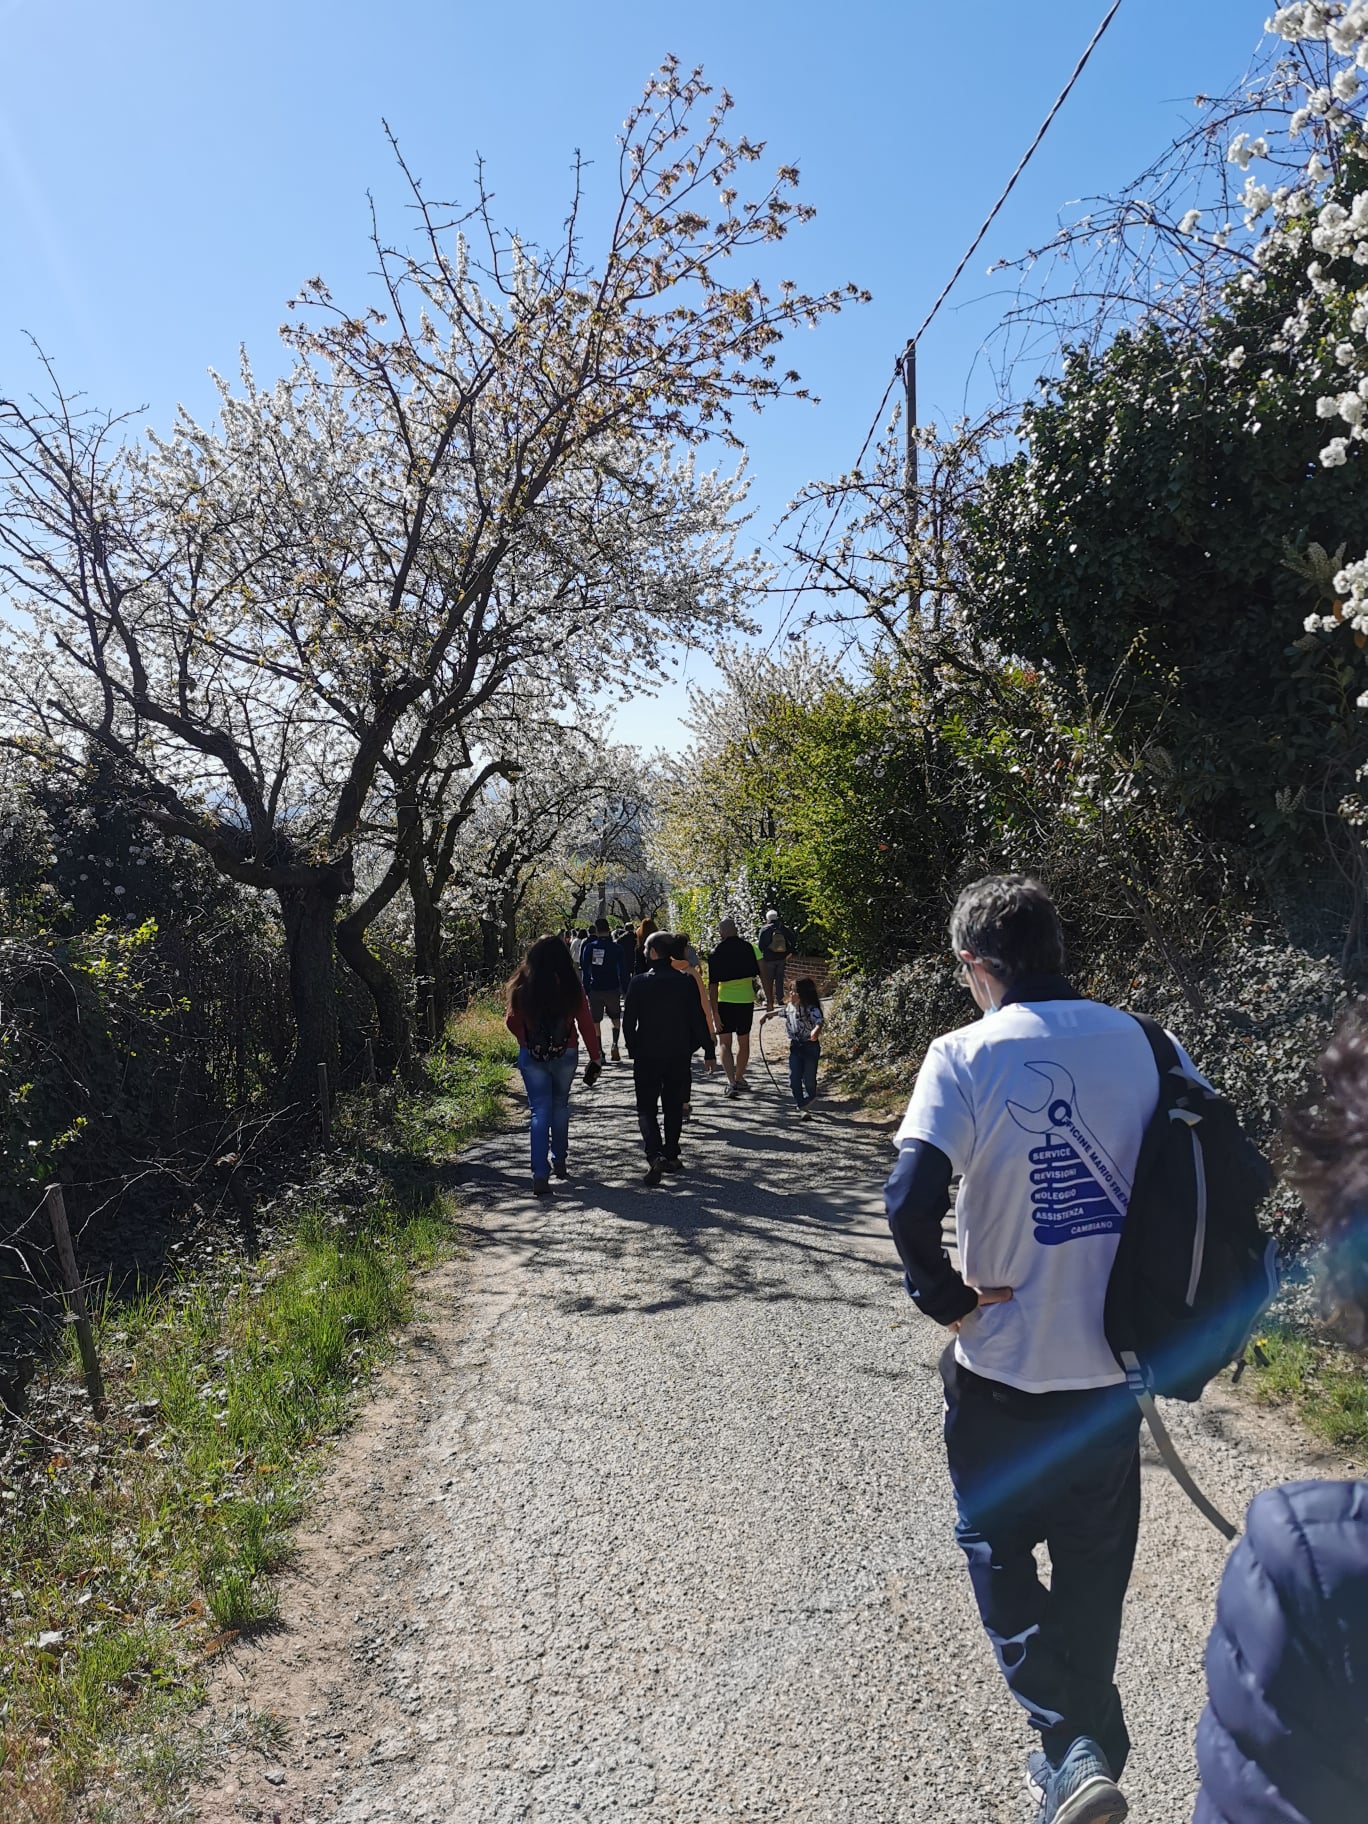 PECETTO – Successo per la camminata enogastronomica